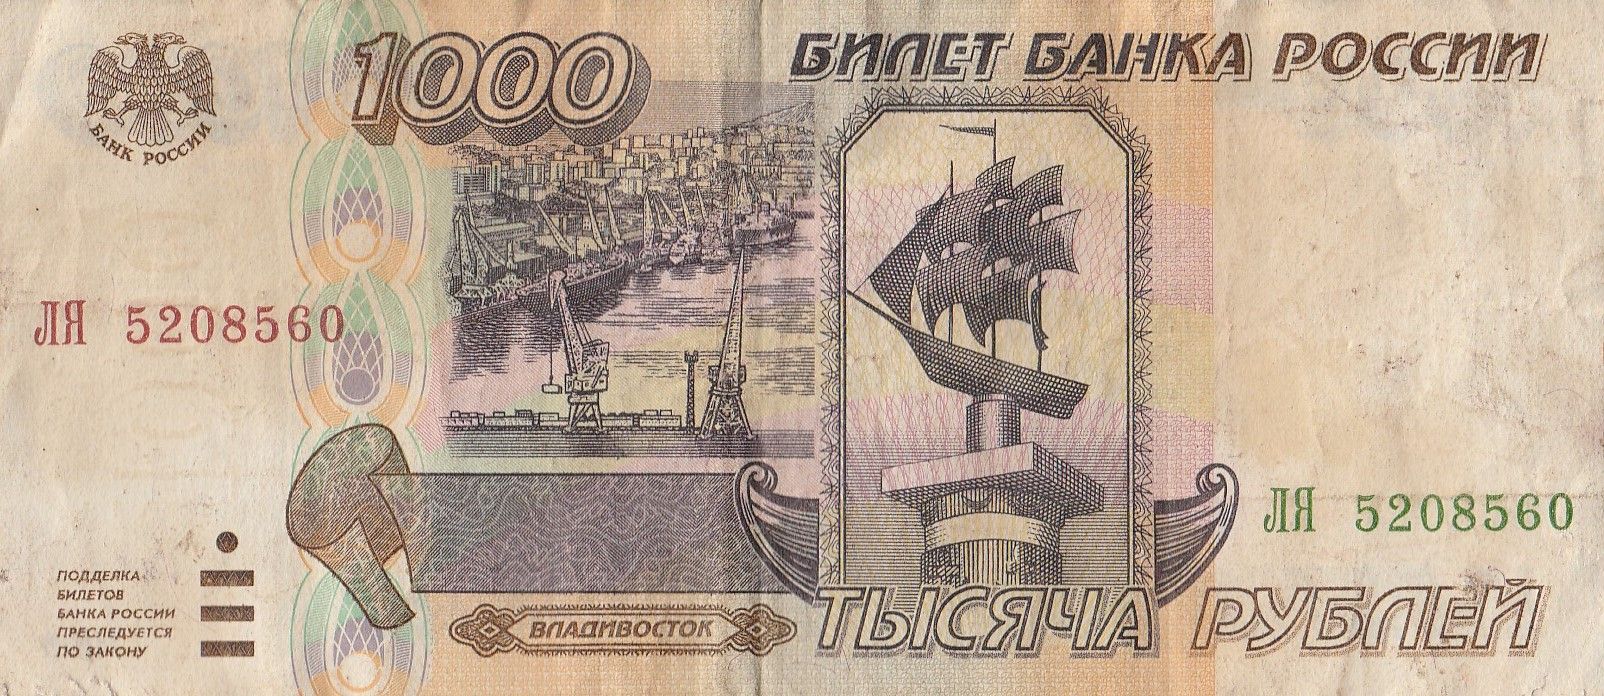 1000 1 ру. 1000 Купюра 1995 года. Купюра 1000 рублей 1995. Купюра 1000 рублей 1995 года. Банкнота 1000 рублей.